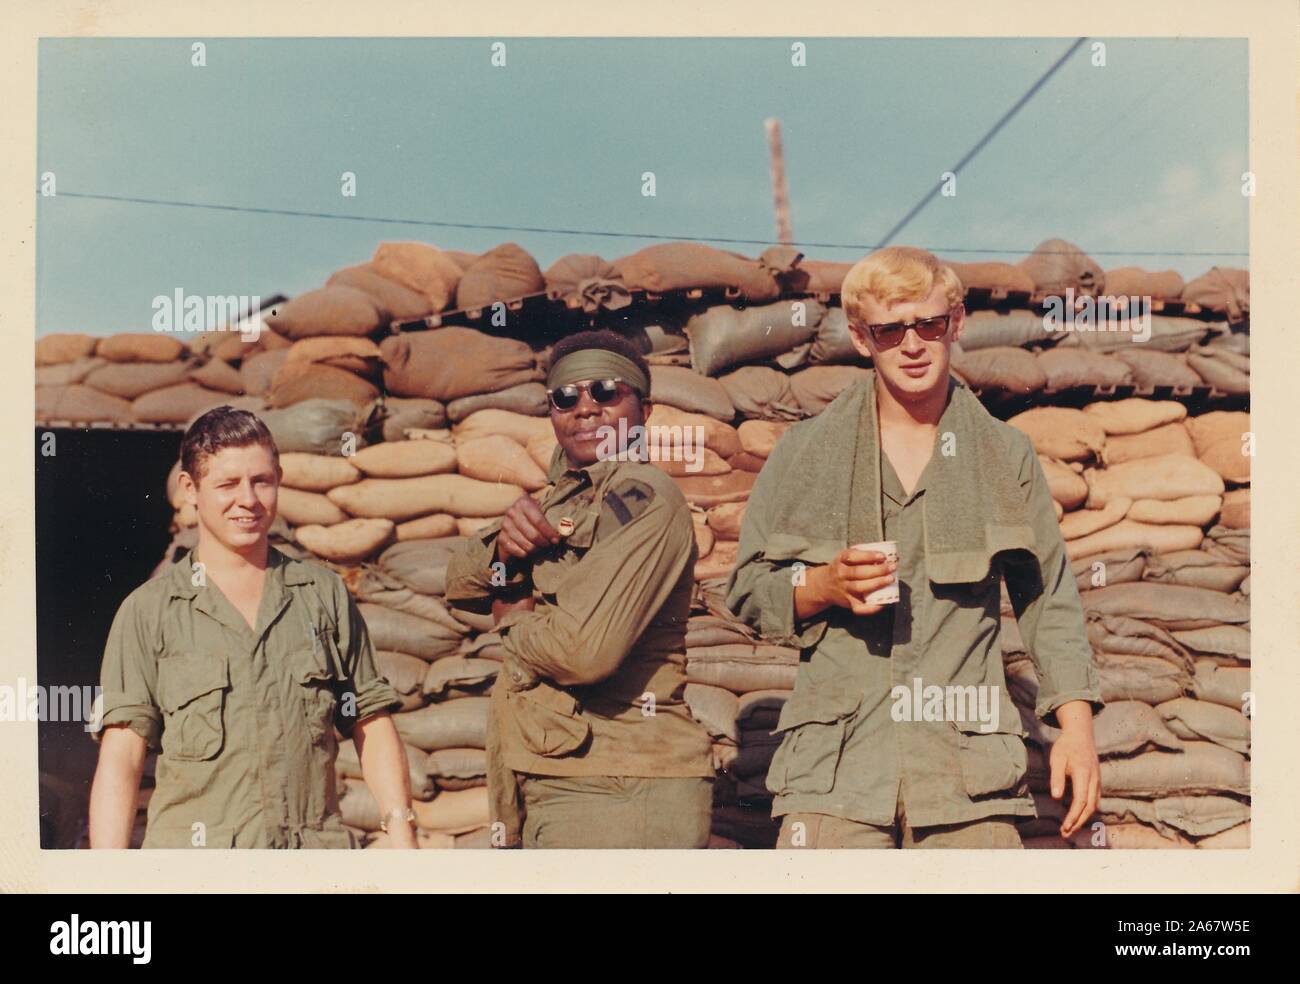 Trois jeunes militaires américains, un groupe multiracial avec deux hommes caucasiens et un homme afro-américain, sourient alors qu'ils posent devant des sacs de sable lors d'une fortification au Vietnam pendant la guerre du Vietnam, 1975. () Banque D'Images